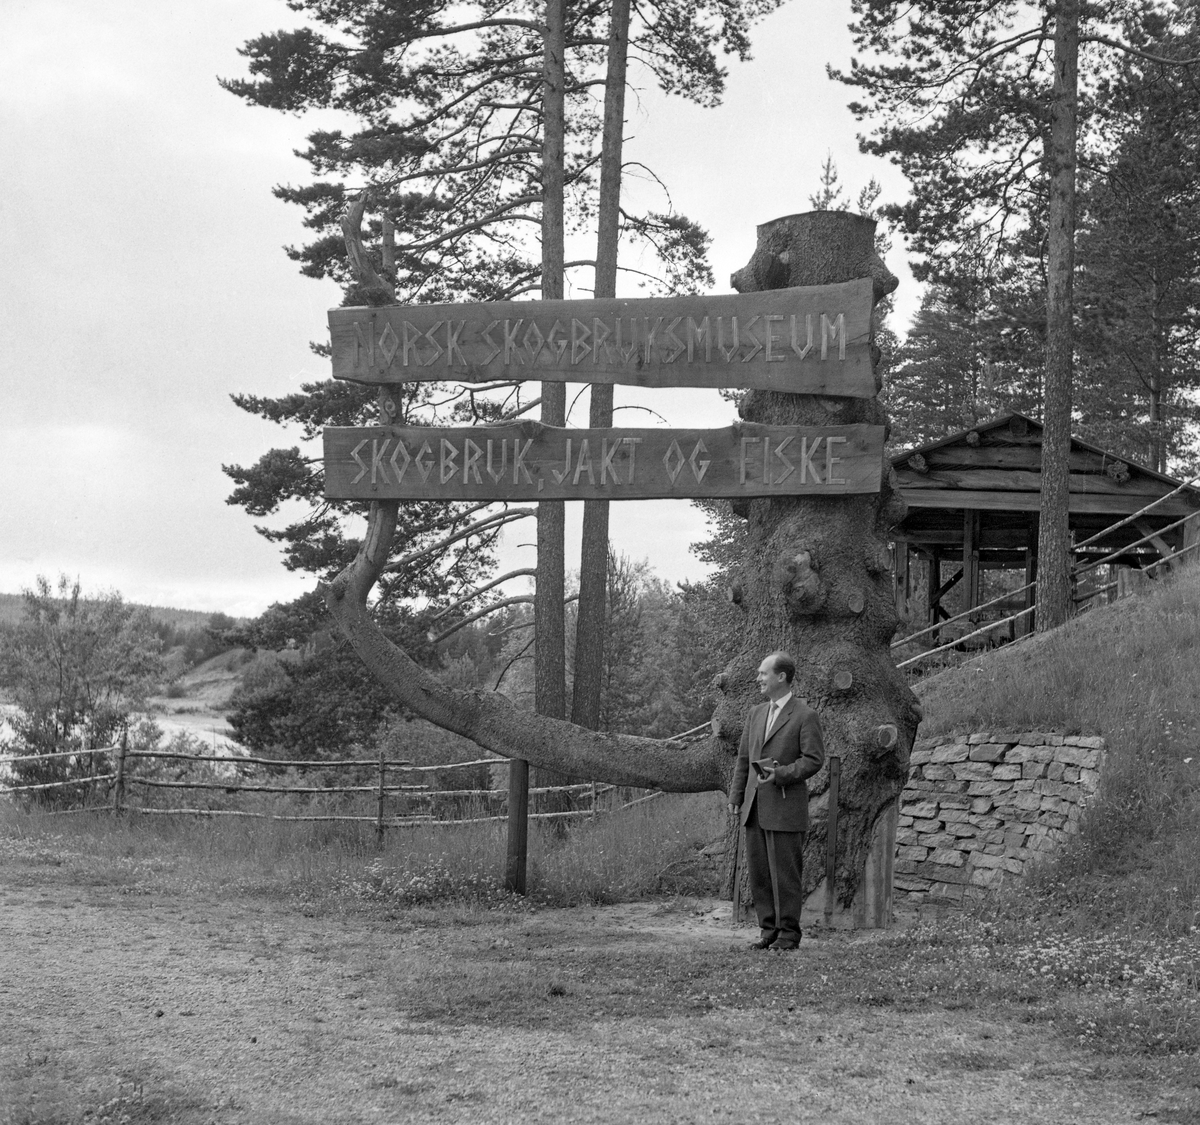 Skilt som viste vegen fra Glomdalsmuseet til Norsk Skogbruksmuseum i Elverum i 1960-åra. De to museene er nære naboer, men Prestfossen i Glomma skiller dem. Skiltet ble plassert på Glomdalsmuseets areal, like ved hengebrua, som fra 1958-59 gjorde det mulig å gå tørrskodd over til Skogbruksmuseets frilftsmuseum på Prestøya. Det ble montert på rotstokken og ei av de kraftige sidegreinene på Skreppåsgrana fra Furnes allmenning. Skreppåsgrana vokste på sæterlykkja til garden Skattum i Vang på Skreppåssætra i Furnes allmenning. Treet skilte seg fra omkringliggende skog ved sine store dimensjoner. I oktober 1962 skal det uvanlige treet ha blitt rammet av en kombinasjon av jordskjelv og vind, slik at rothalsen knakk og stammen ble liggende på sæterlykkja. Treet ble 160 år gammelt og 23, 5 meter høgt. Stammediamteren i brysthøgde var 1,23 meter og volumet med med bark ble beregnet til 9,5 kubikkmeter. Allmenningsledelsen tilbød dette spesielle treet til Norsk Skogbruksmuseum, der konservator Tore Fossum (1926-2017) så at han kunne bruke det som landemerke og vegviser ved hengebrua mellom Glomdalsmuseet og Skogbruksmuseets friluftsmuseum på Prestøya, som den gangen var eneste atkomstveg til museet. Maskinfører Per A. Skyberg (1936-1988) fra Furnes allmenning fikk den vanskelige transportoppgaven. Treet ble lagt på en traktortilhenger med den nevnte greina til værs, og så gjaldt det for Per å finne ei reiserute der han unngikk passasjer under lave bruer. Noen steder greide han å smyge stokken og greina under ledningsspenn på tvers av vegen ved å få gode hjelpere til å heve ledningene ved hjelp av lange rajer. Jernbanebrua på Vestad i Elverum lot seg imidlertid ikke passere, noe som nødvendiggjorde en komplisert omveg. Rotstokken og den intakte greina veid om lag 3 tonn. Den ble reist like ved bruhodet for hengebrua på Glomdalsmuseets grunn med to brede planker med påskriftene «NORSK SKOGBRUKSMUSEUM» og «SKOGBRUK, JAKT, FISKE». Her ser vi en dresskledd Tore Fossum framfor skiltet da det var nytt, i 1964. Vegviseren fikk mindre praktisk betydning etter at museet i midten av 1960-åra fikk nye arealer på østsida av Glomma med innkjøring fra Solørvegen.